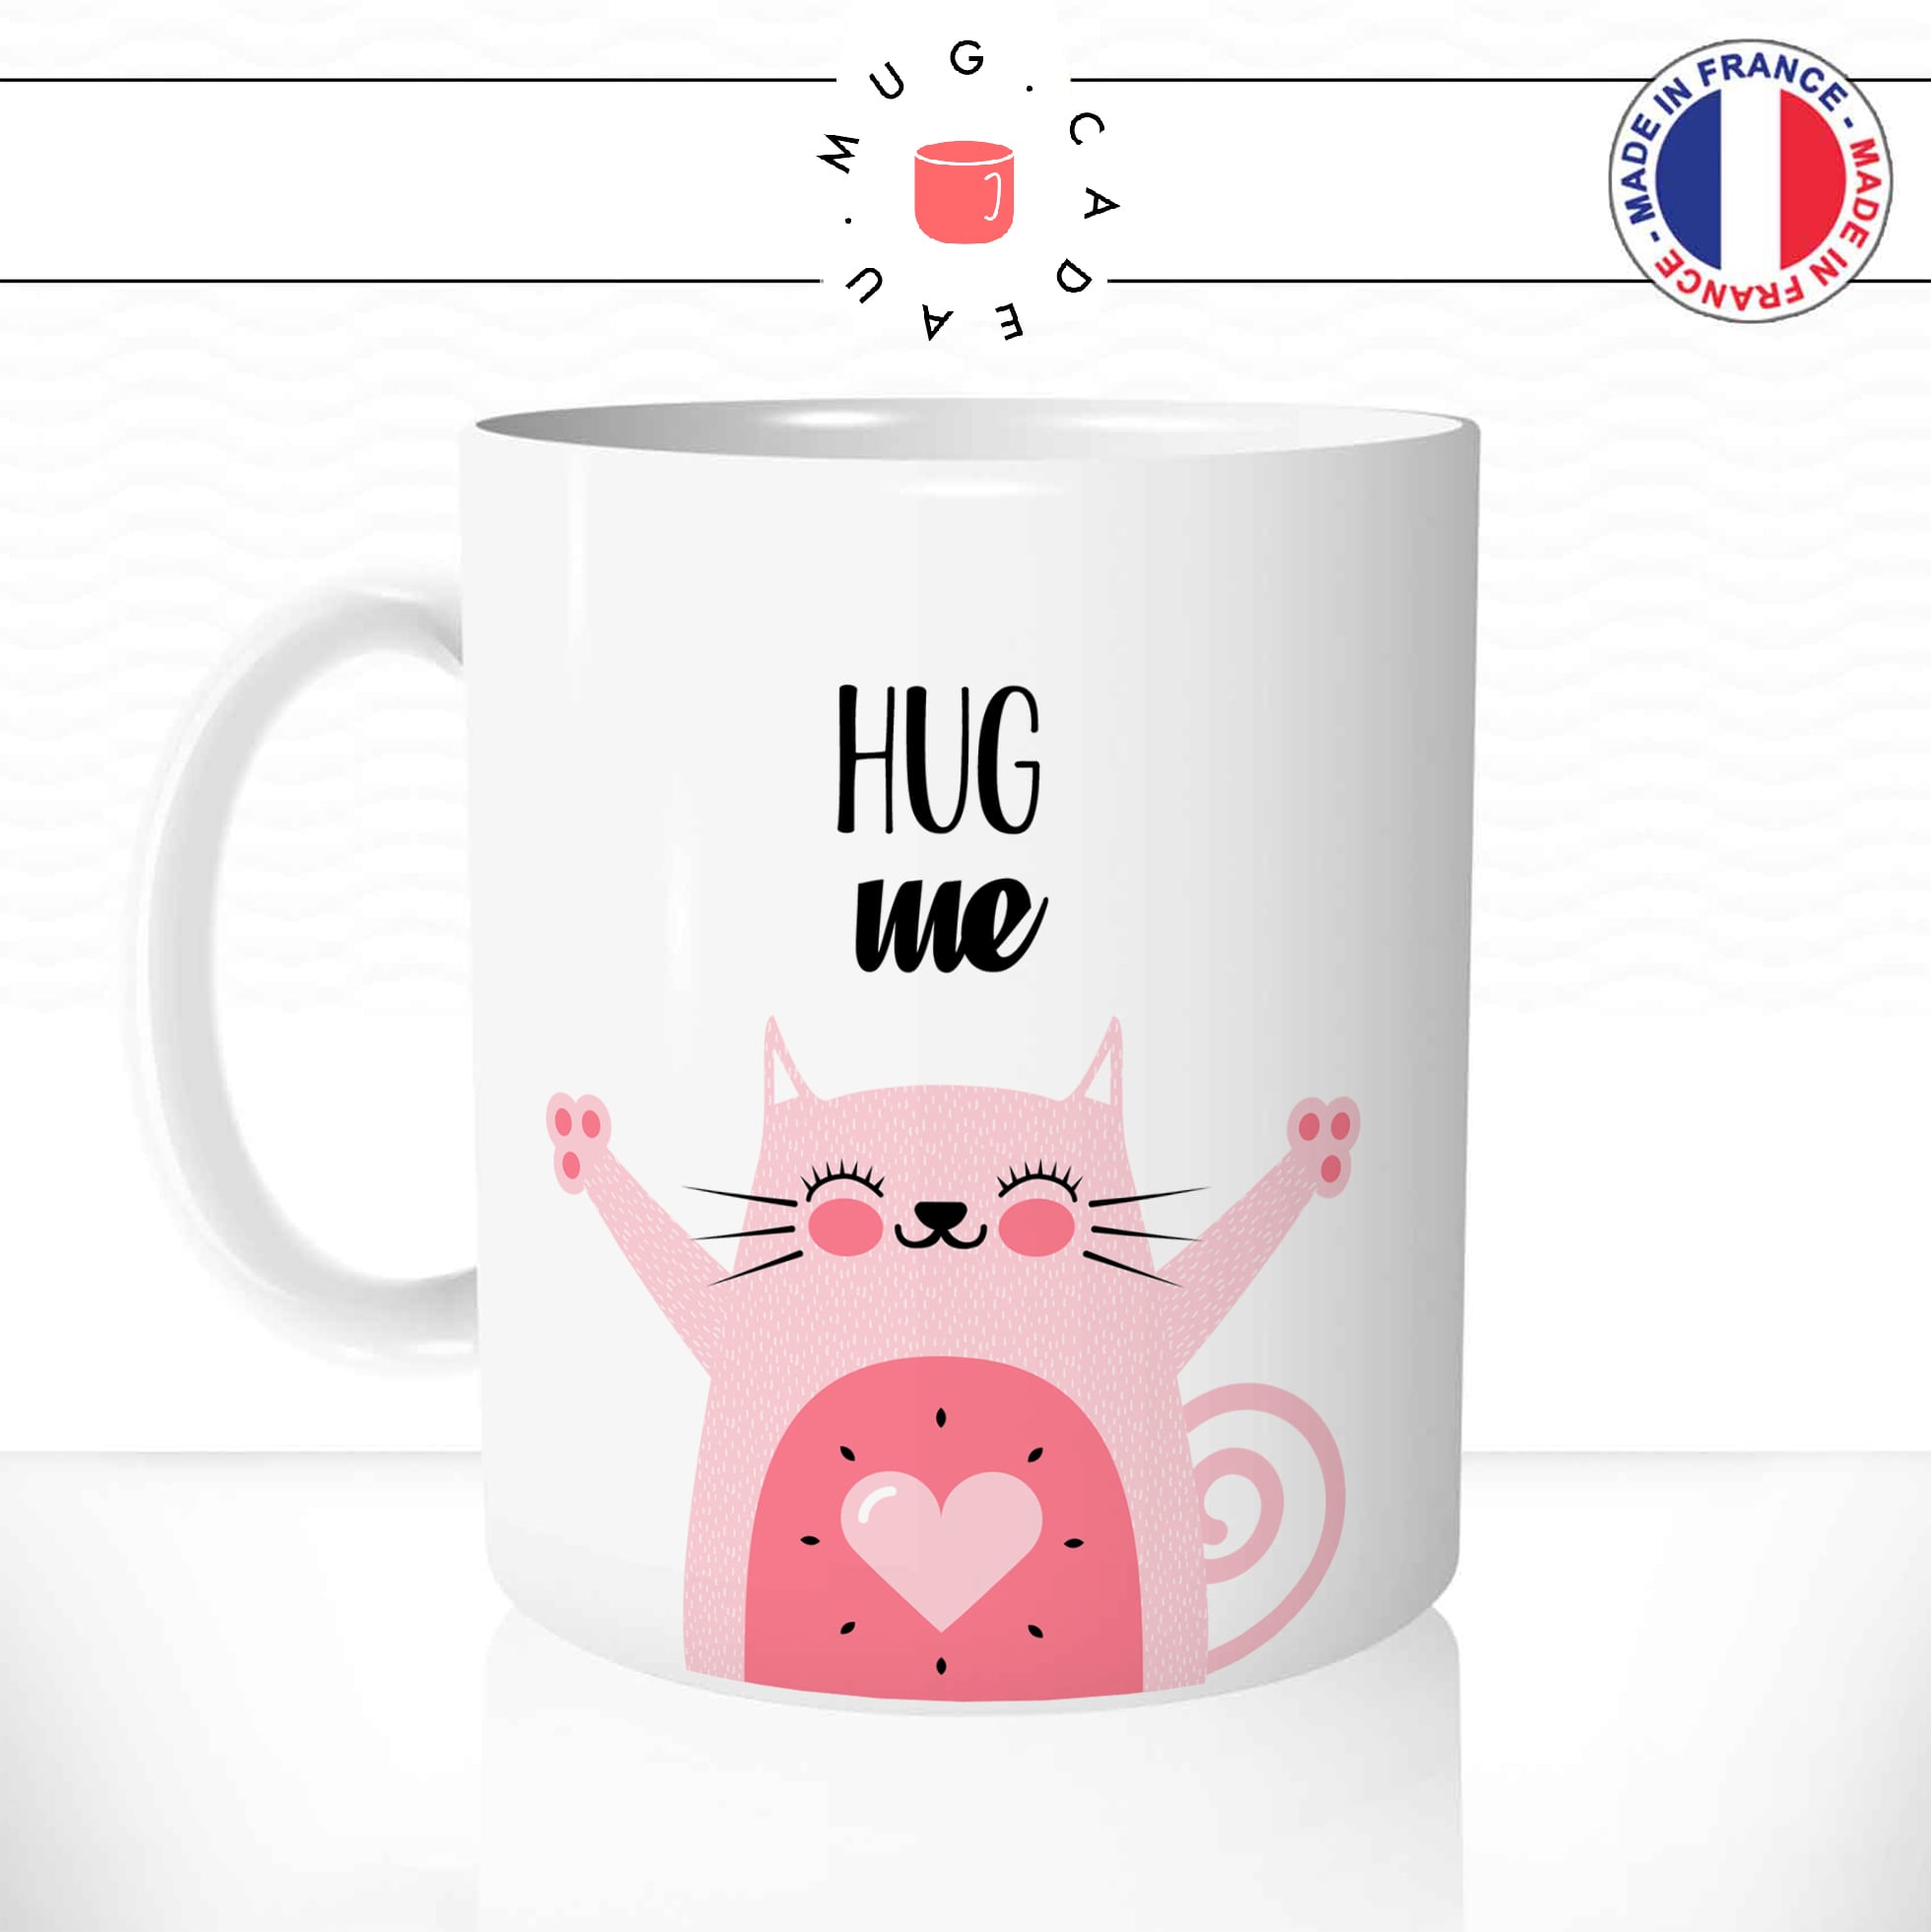 mug-tasse-chat-chaton-cat-hug-me-calin-amour-mignon-fun-cool-animal-dessin-original-café-thé-idée-cadeau-personnalisé1